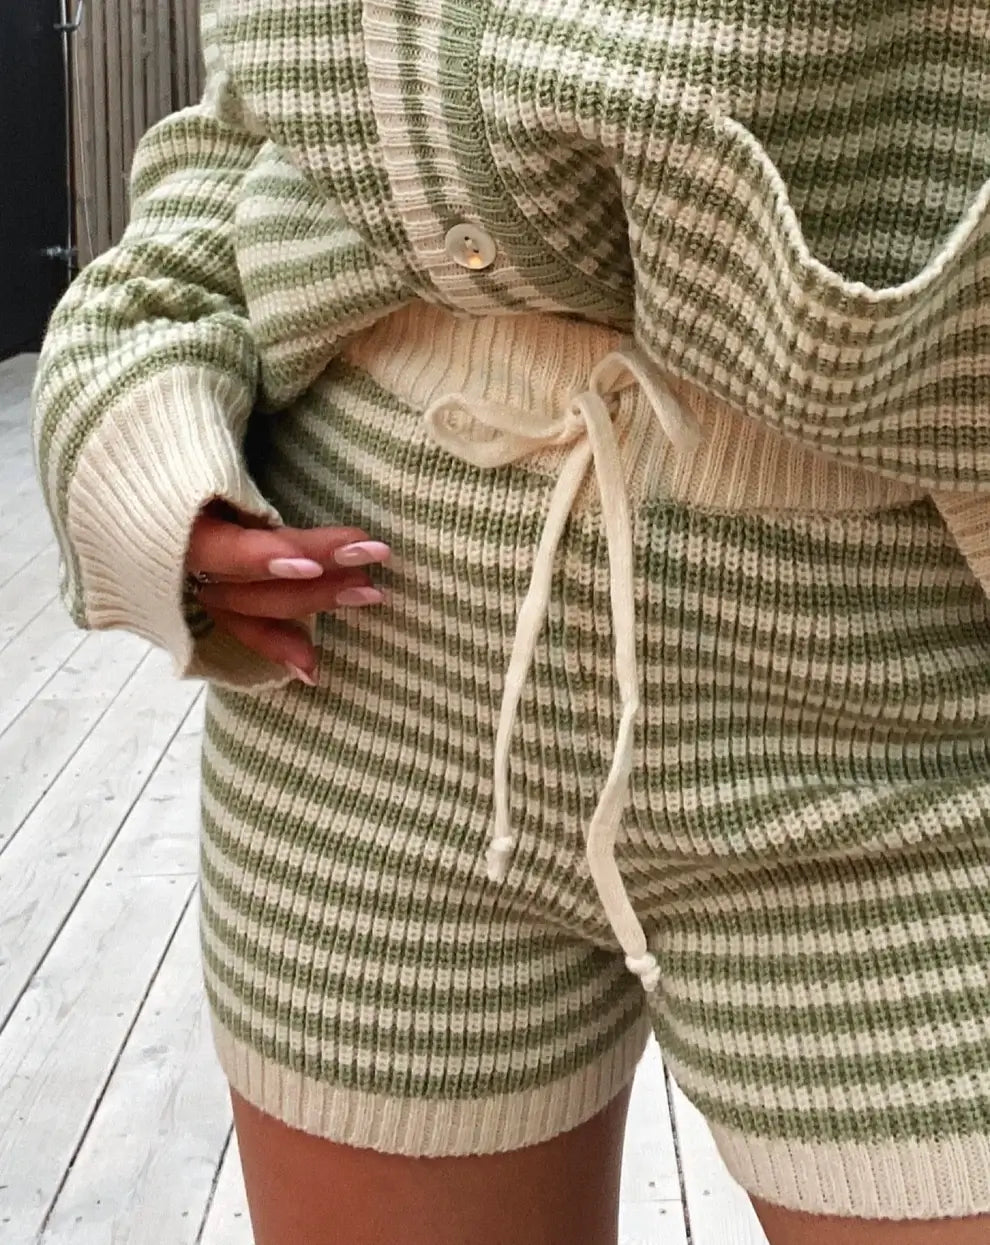 Anya knit shorts - Stripped green